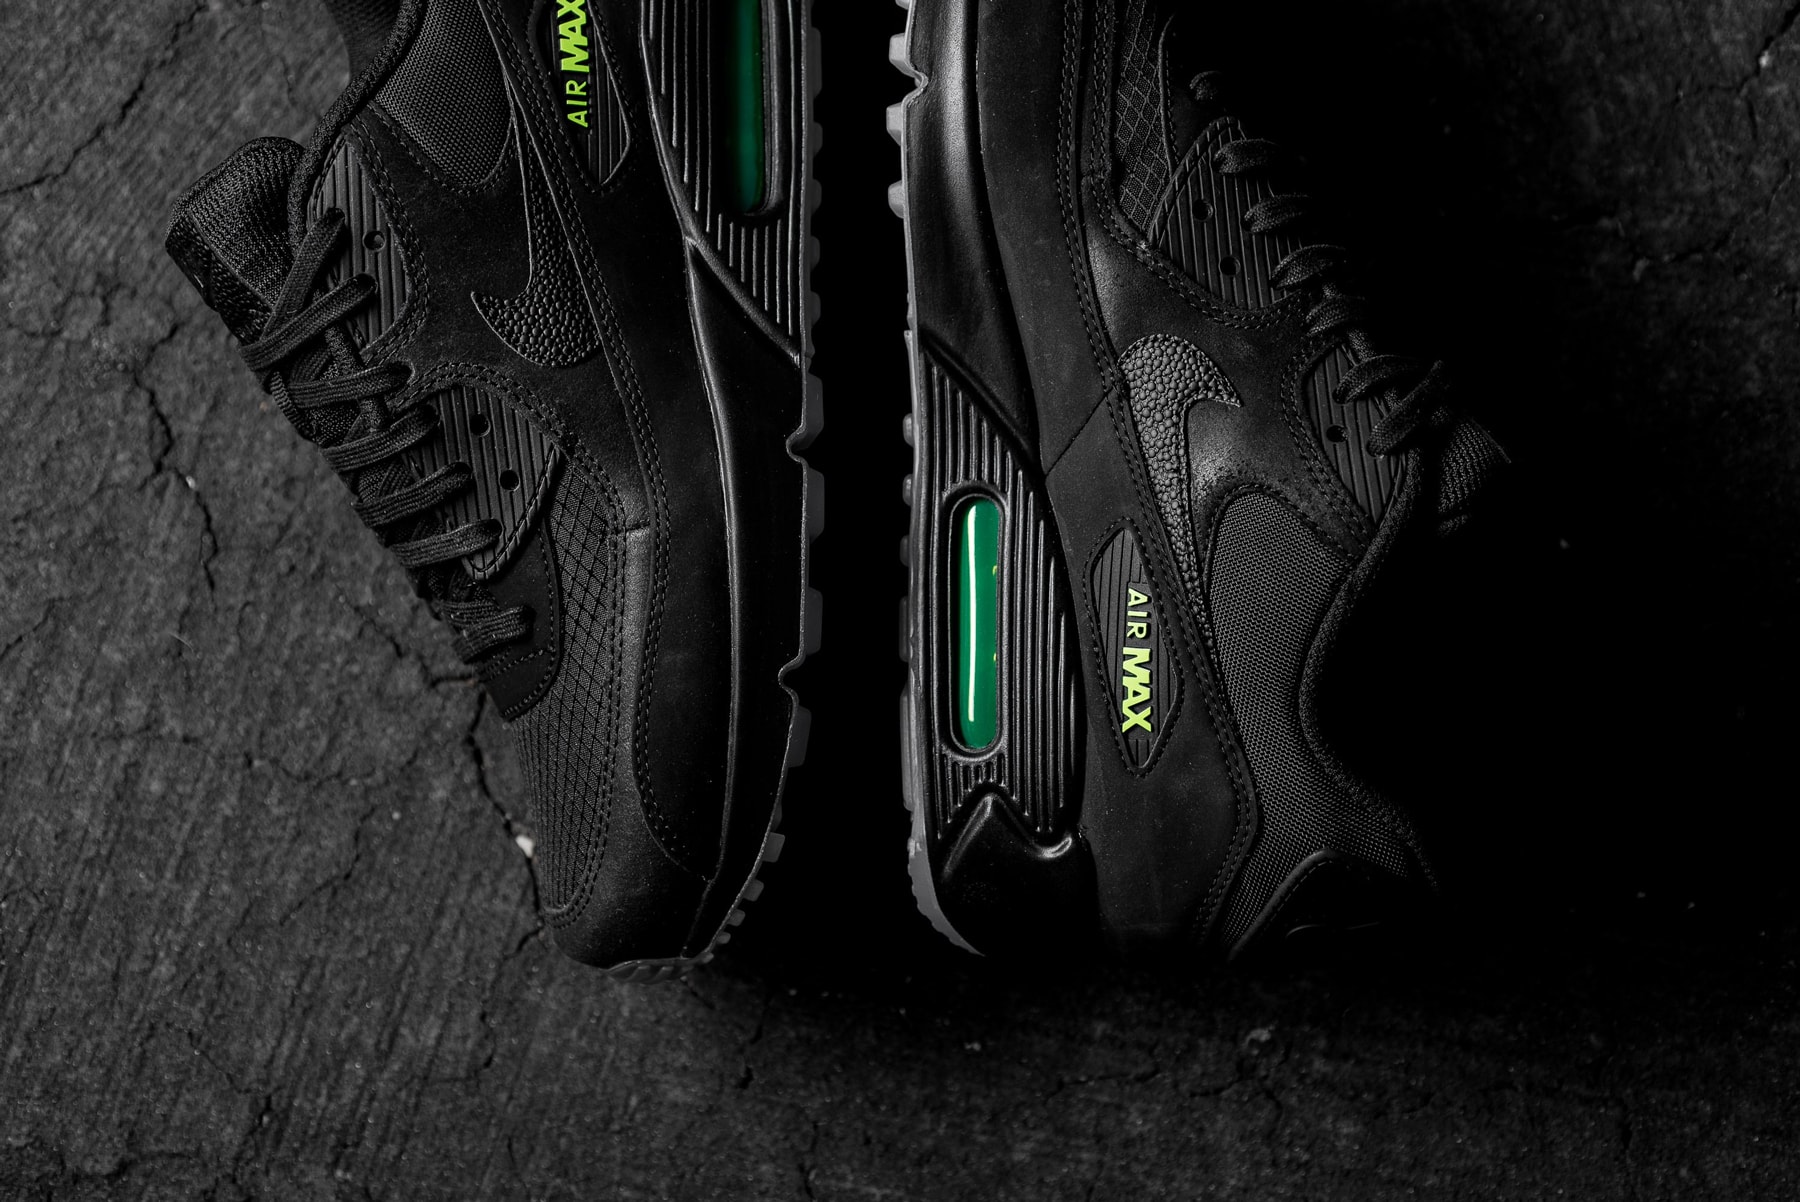 Nike Air Max 90 Black Volt Release Date info sneakers footwear